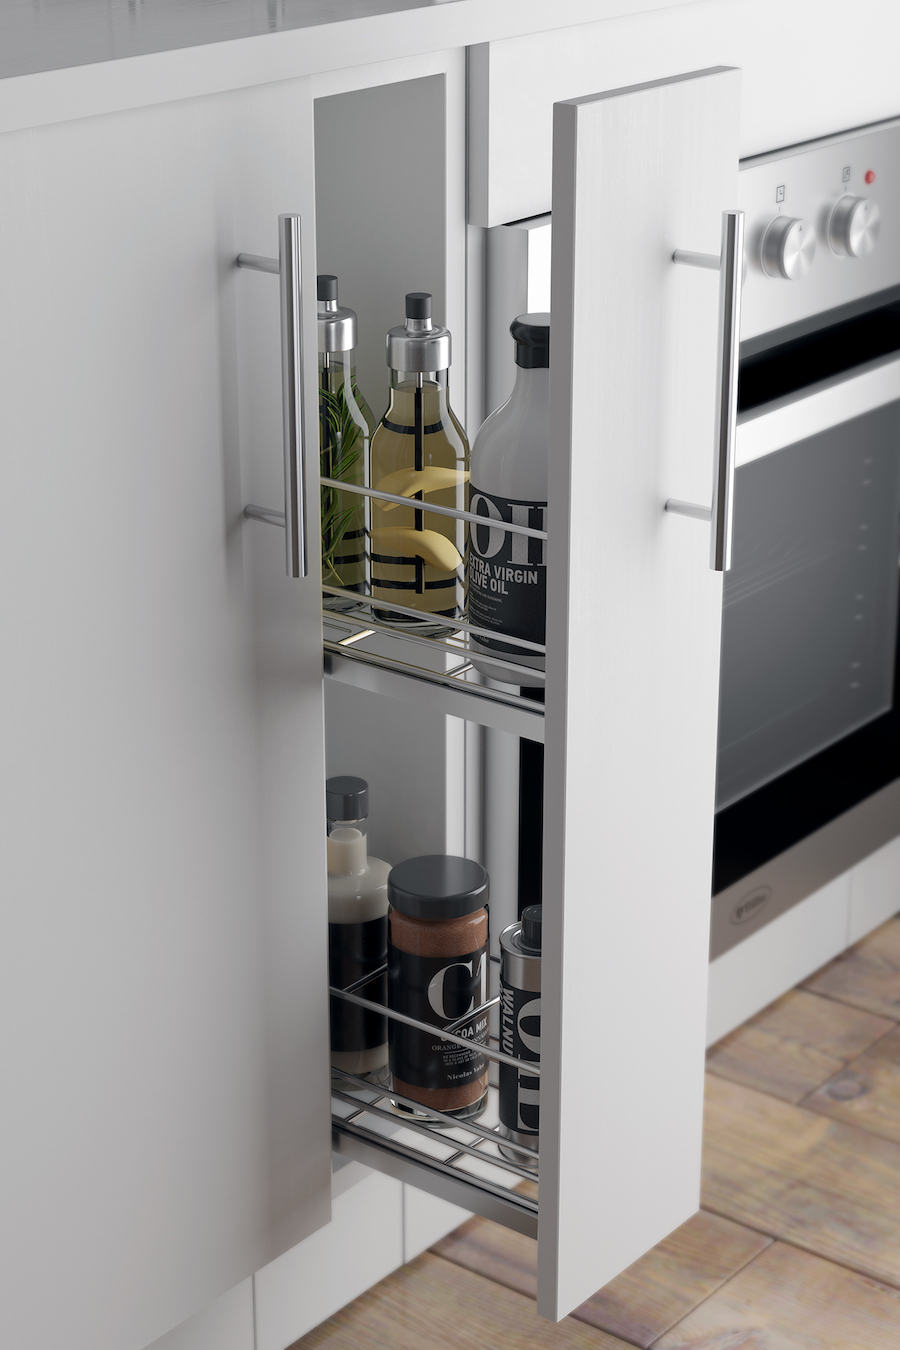 Mueble de cocina blanco semi abierto, con espacio para almacenar condimientos y botellas.